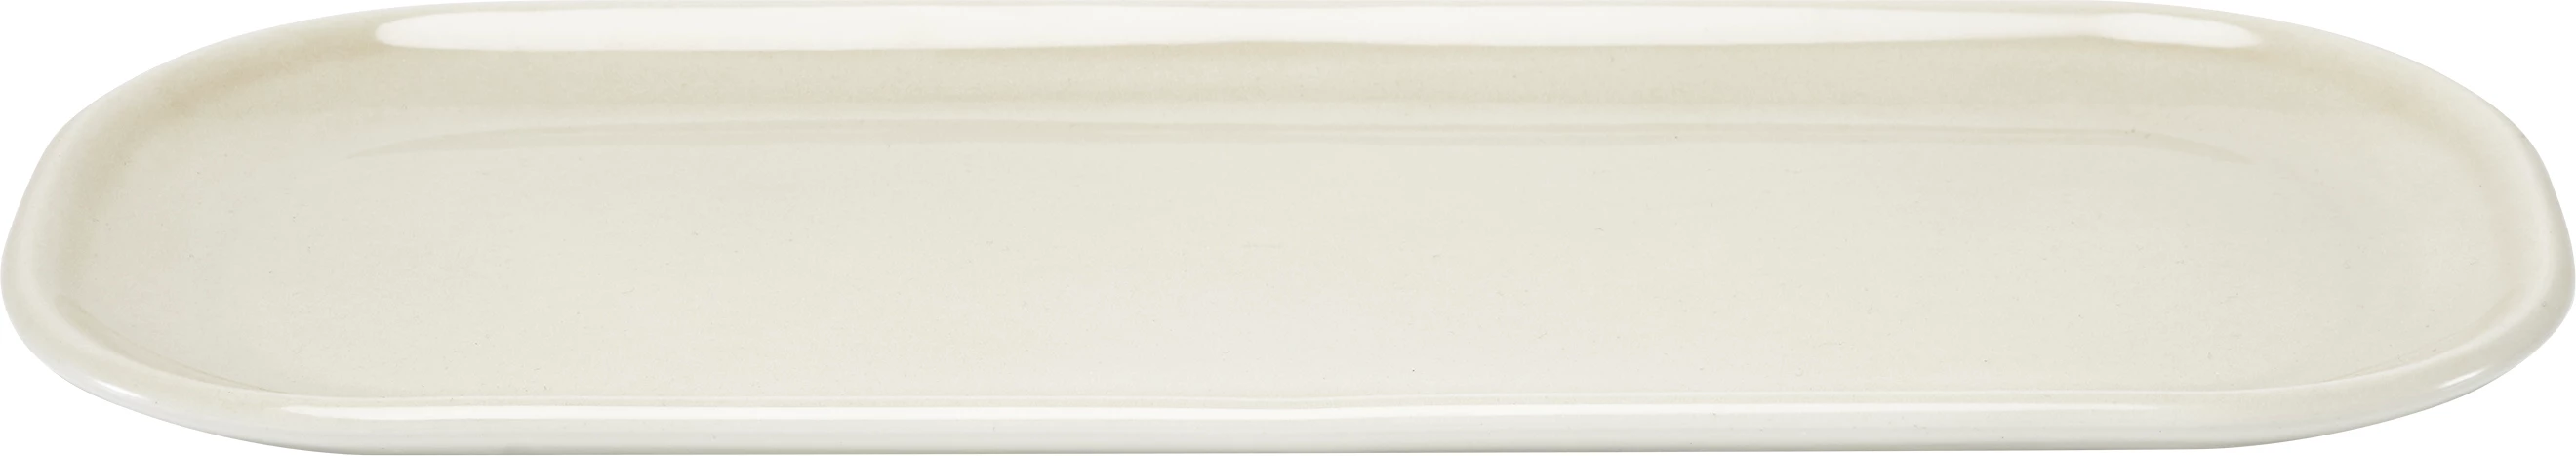 Figgjo Pax tallerken, oval, beige, 30 x 13 cm